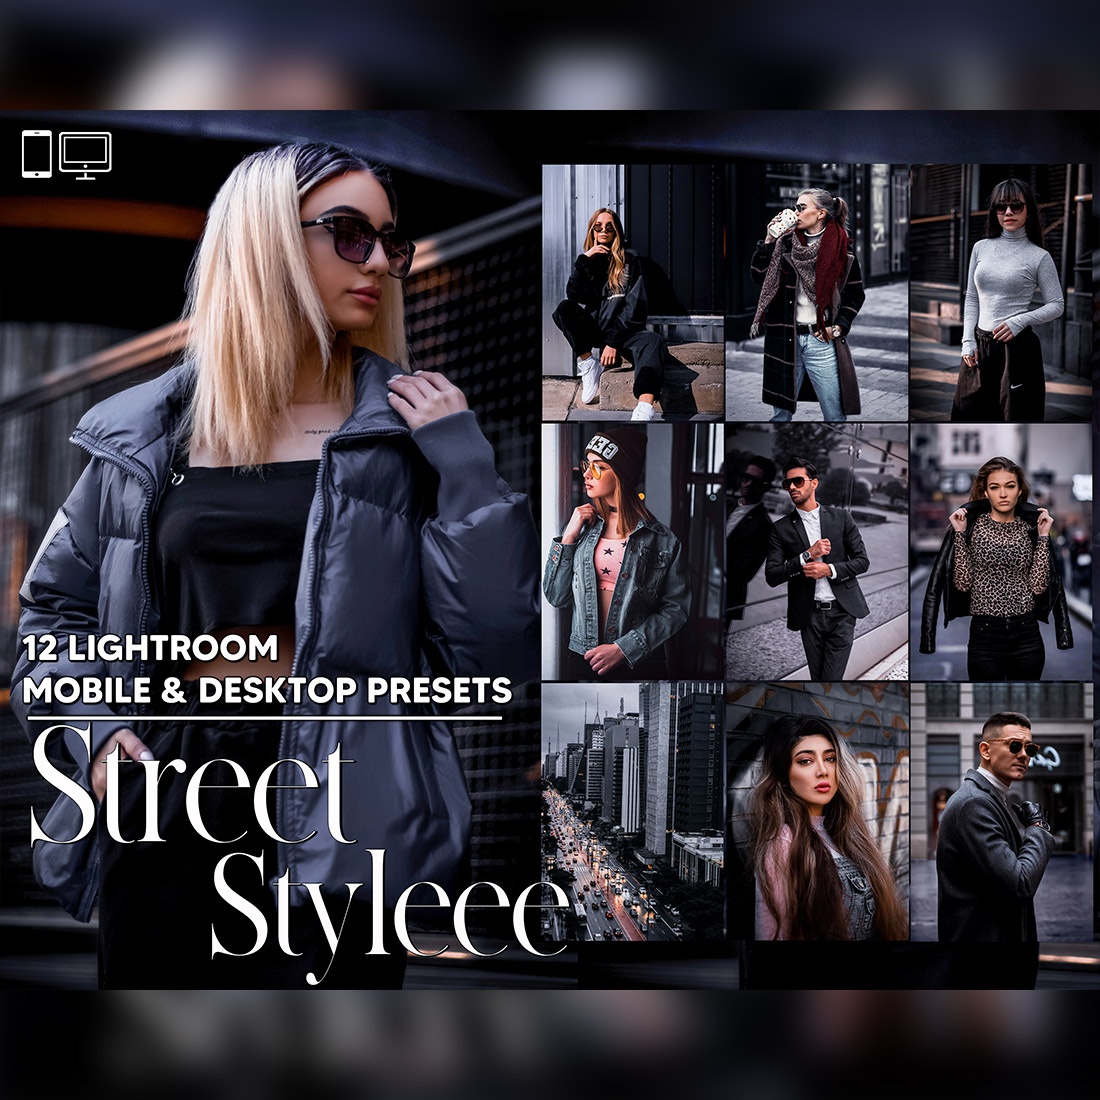 12 Street Styleee Lightroom Presets, Color Mobile Editing, Portrait Desktop LR Filter DNG Influencer Instagram Theme, Dark Hue, Blogger CC cover image.